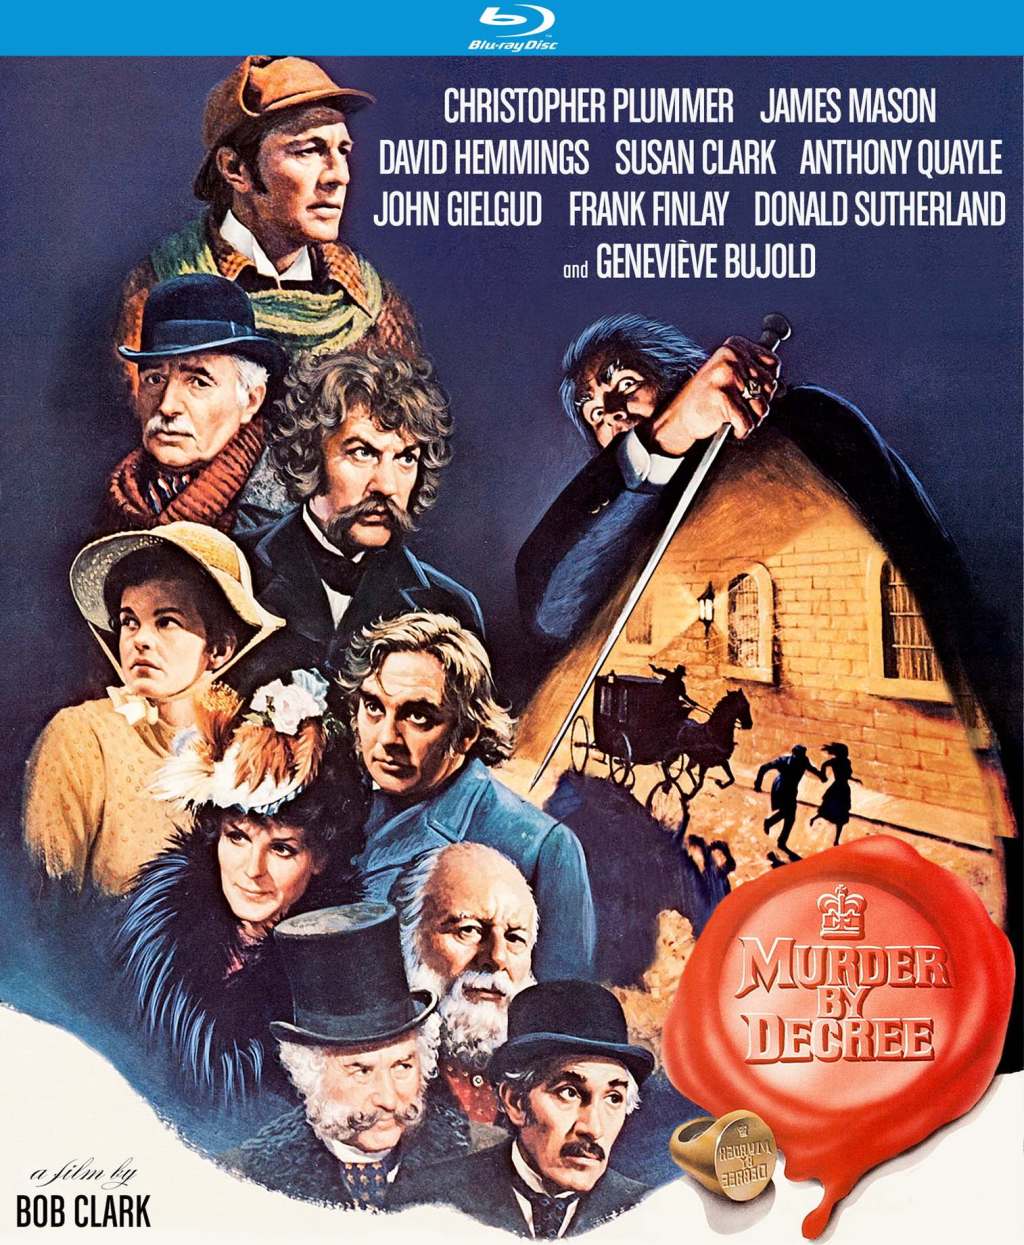 Holmes on Film: Murder by Decree (1979)